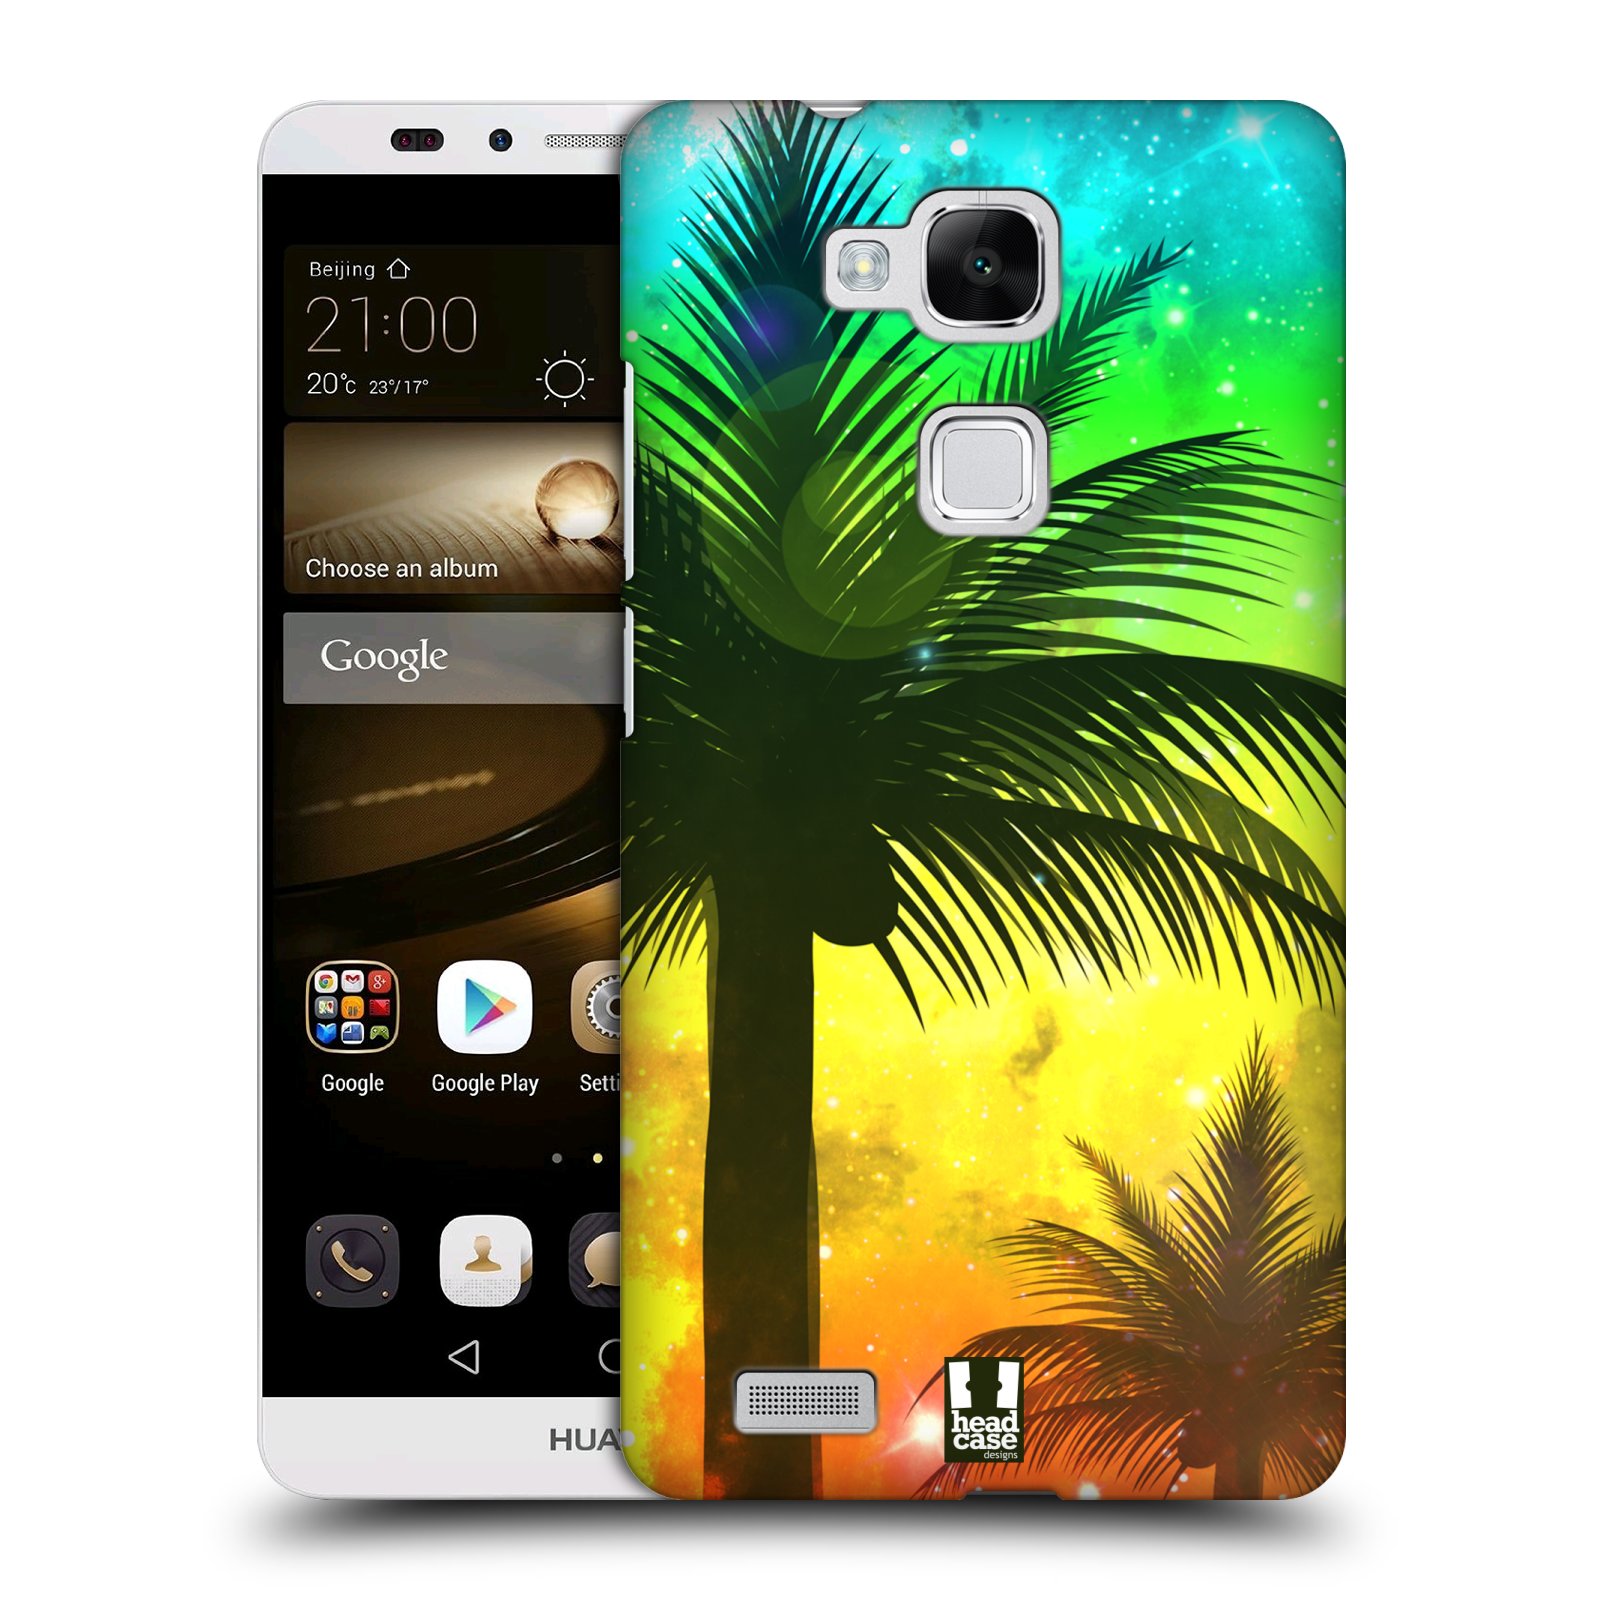 HEAD CASE plastový obal na mobil Huawei Mate 7 vzor Kreslený motiv silueta moře a palmy ZELENÁ A ORANŽOVÁ